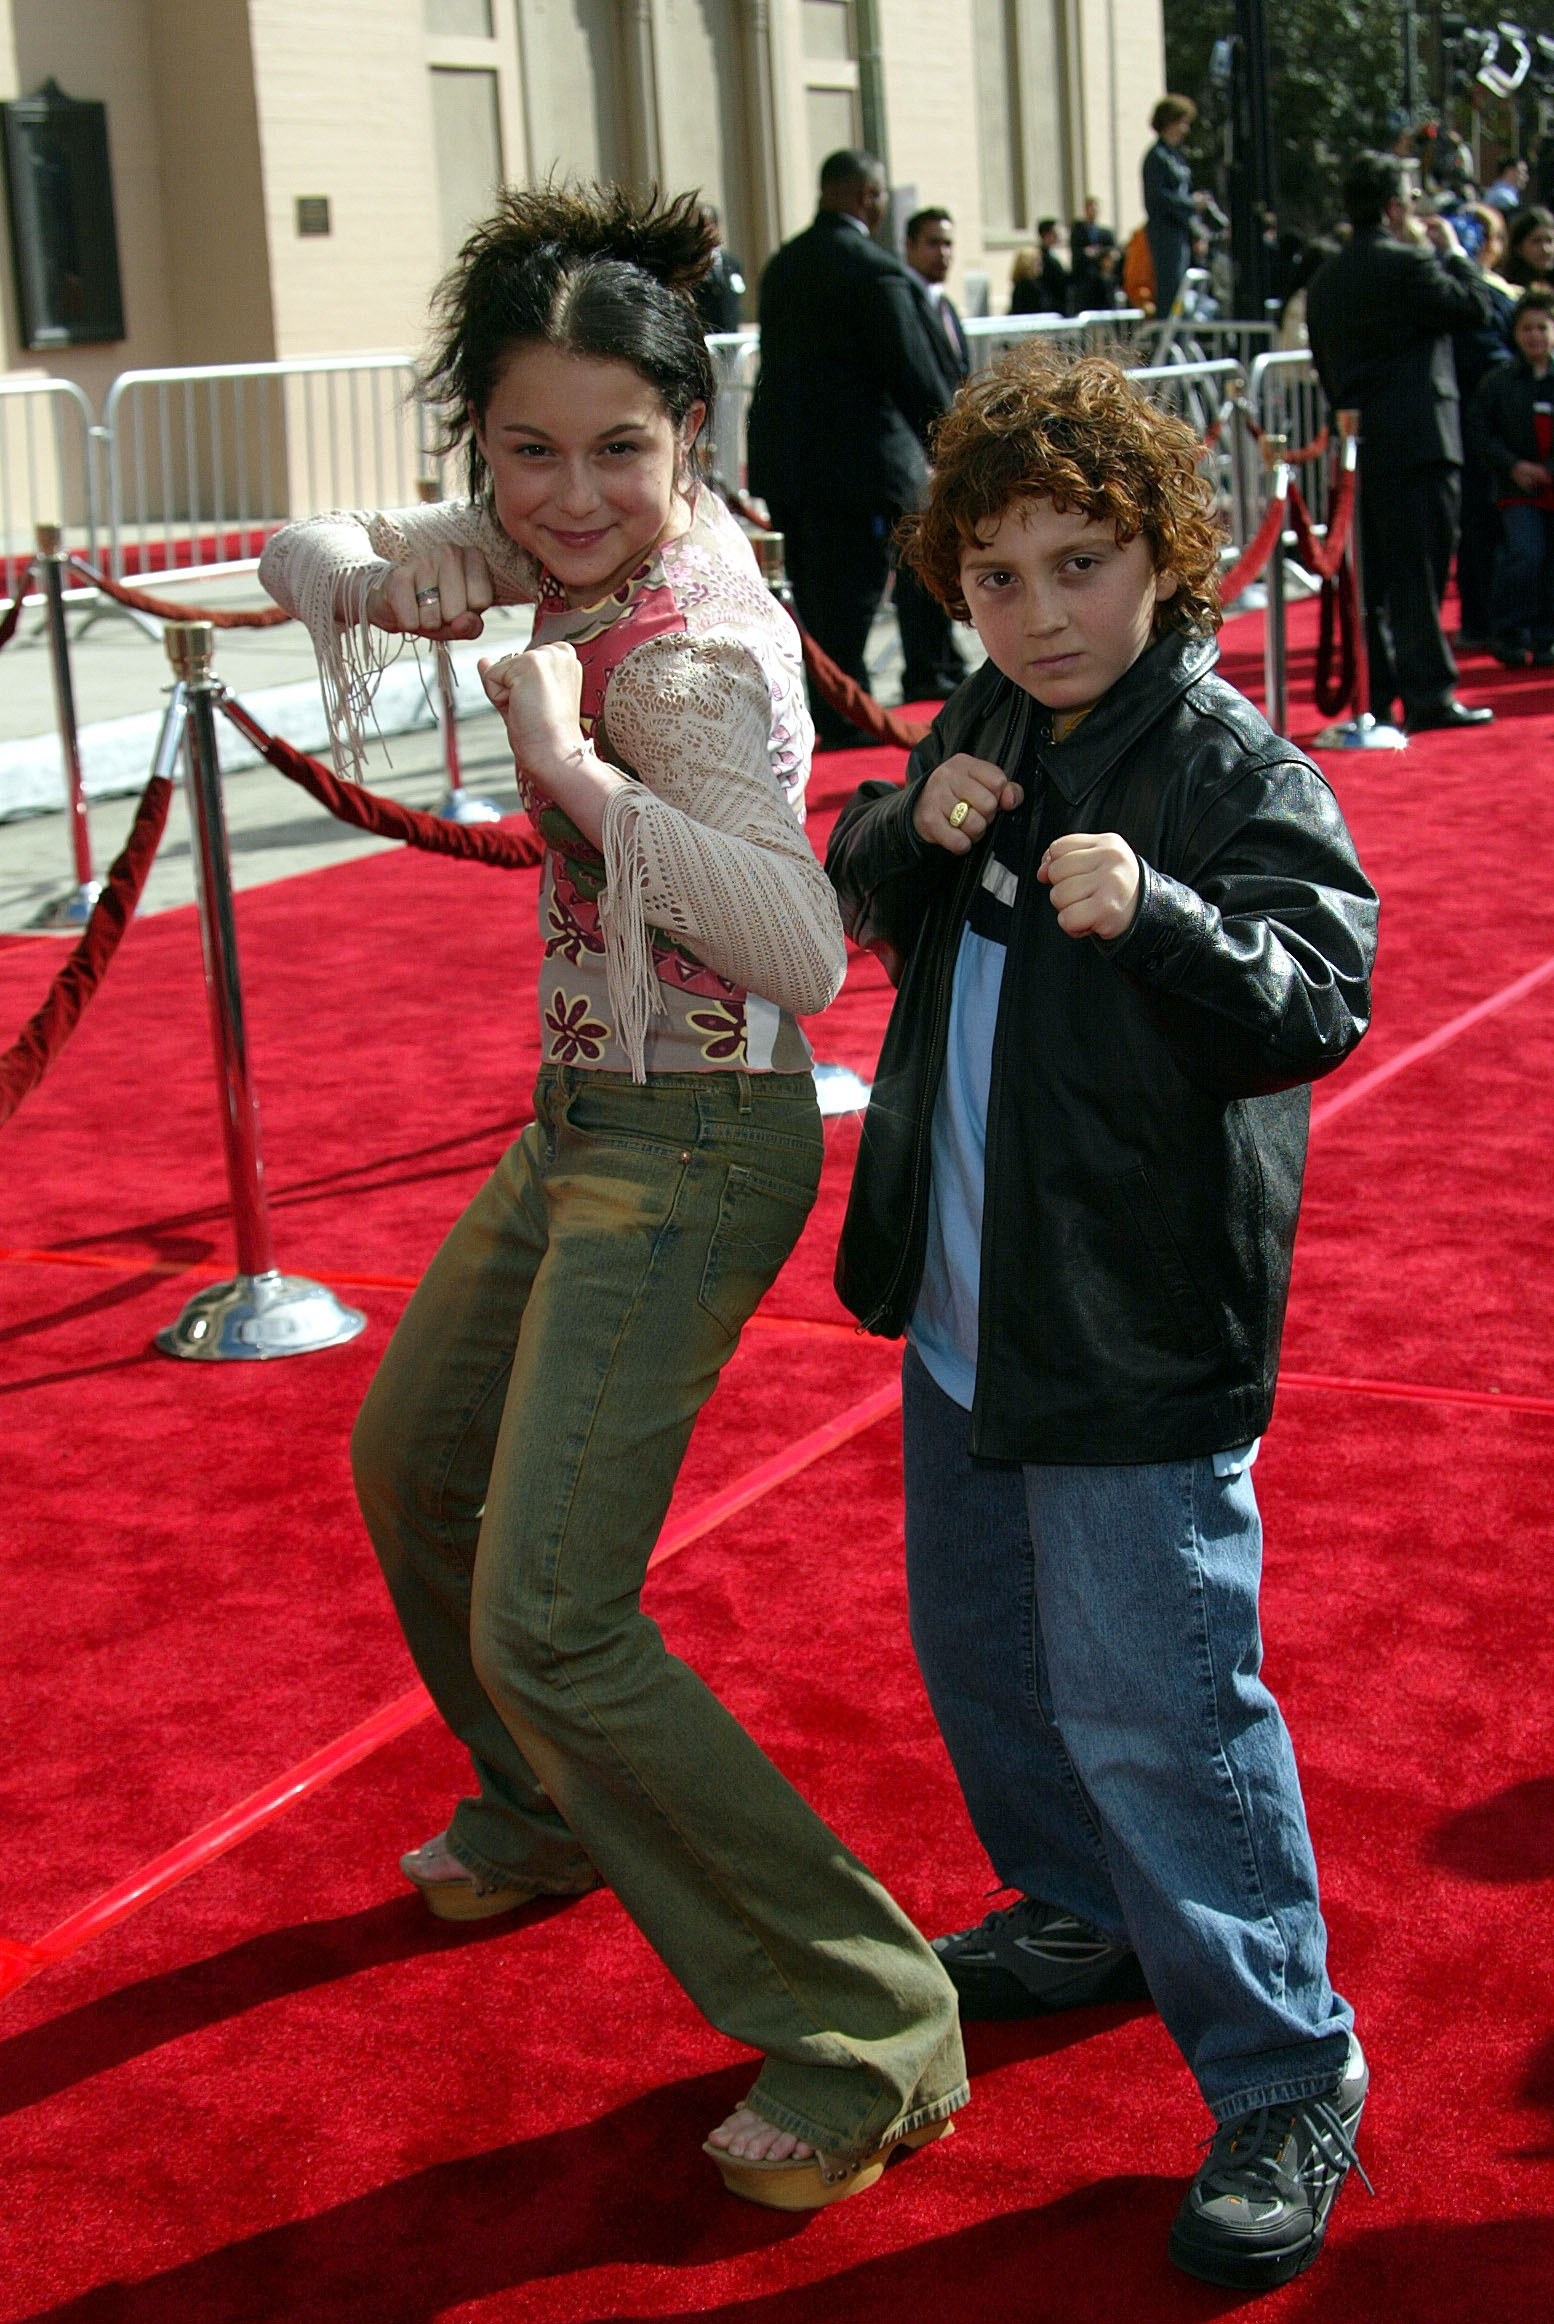 Alexa Vega and Daryl Sabara on a red carpet